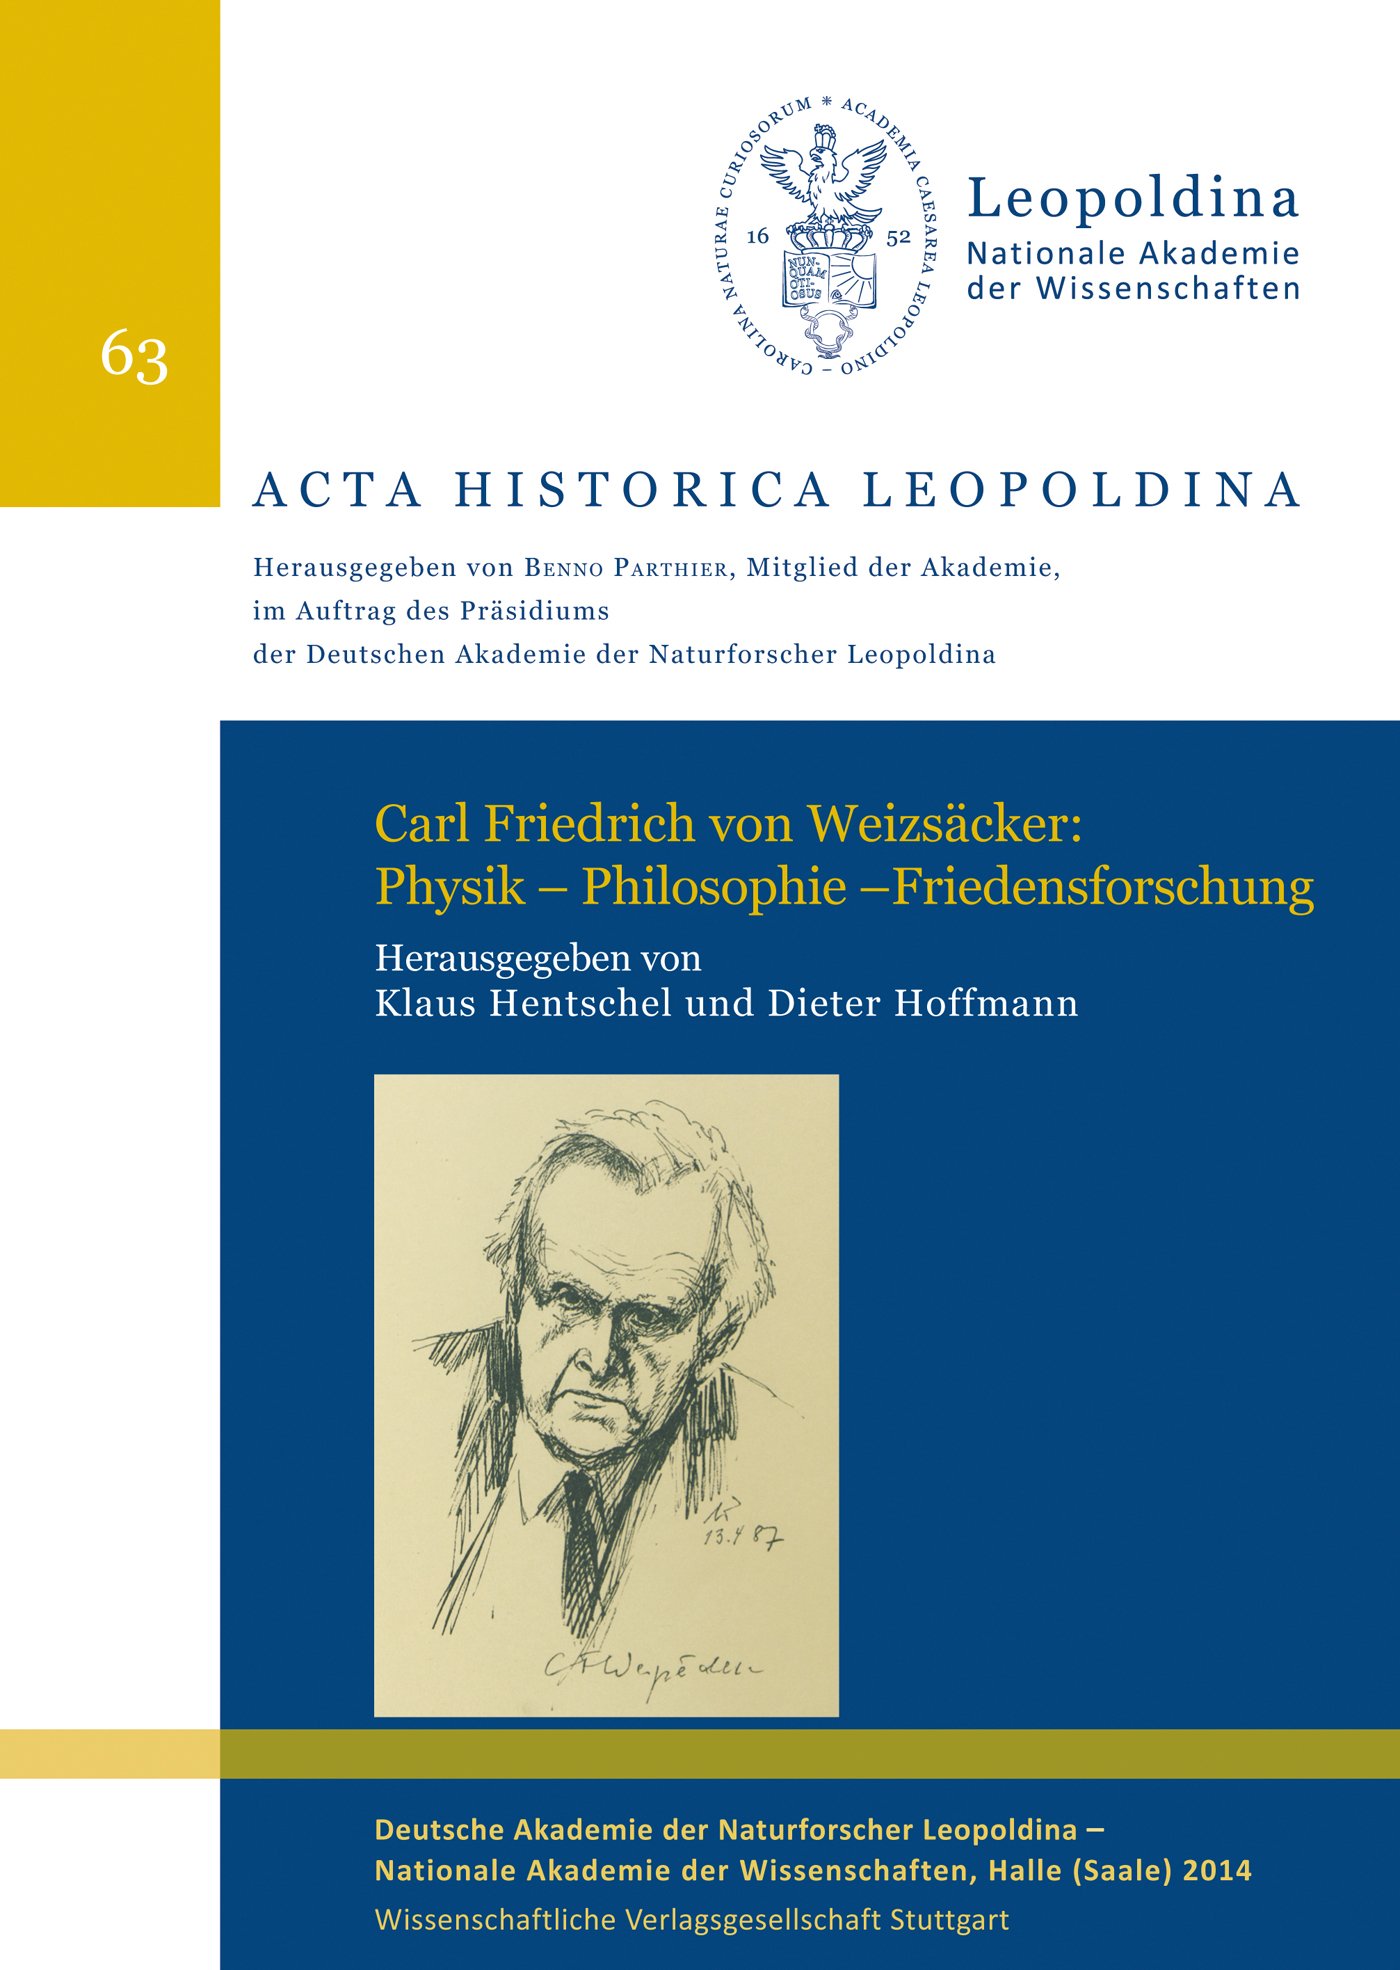 Carl Friedrich von Weizsäcker: Physik – Philosophie – Friedensforschung